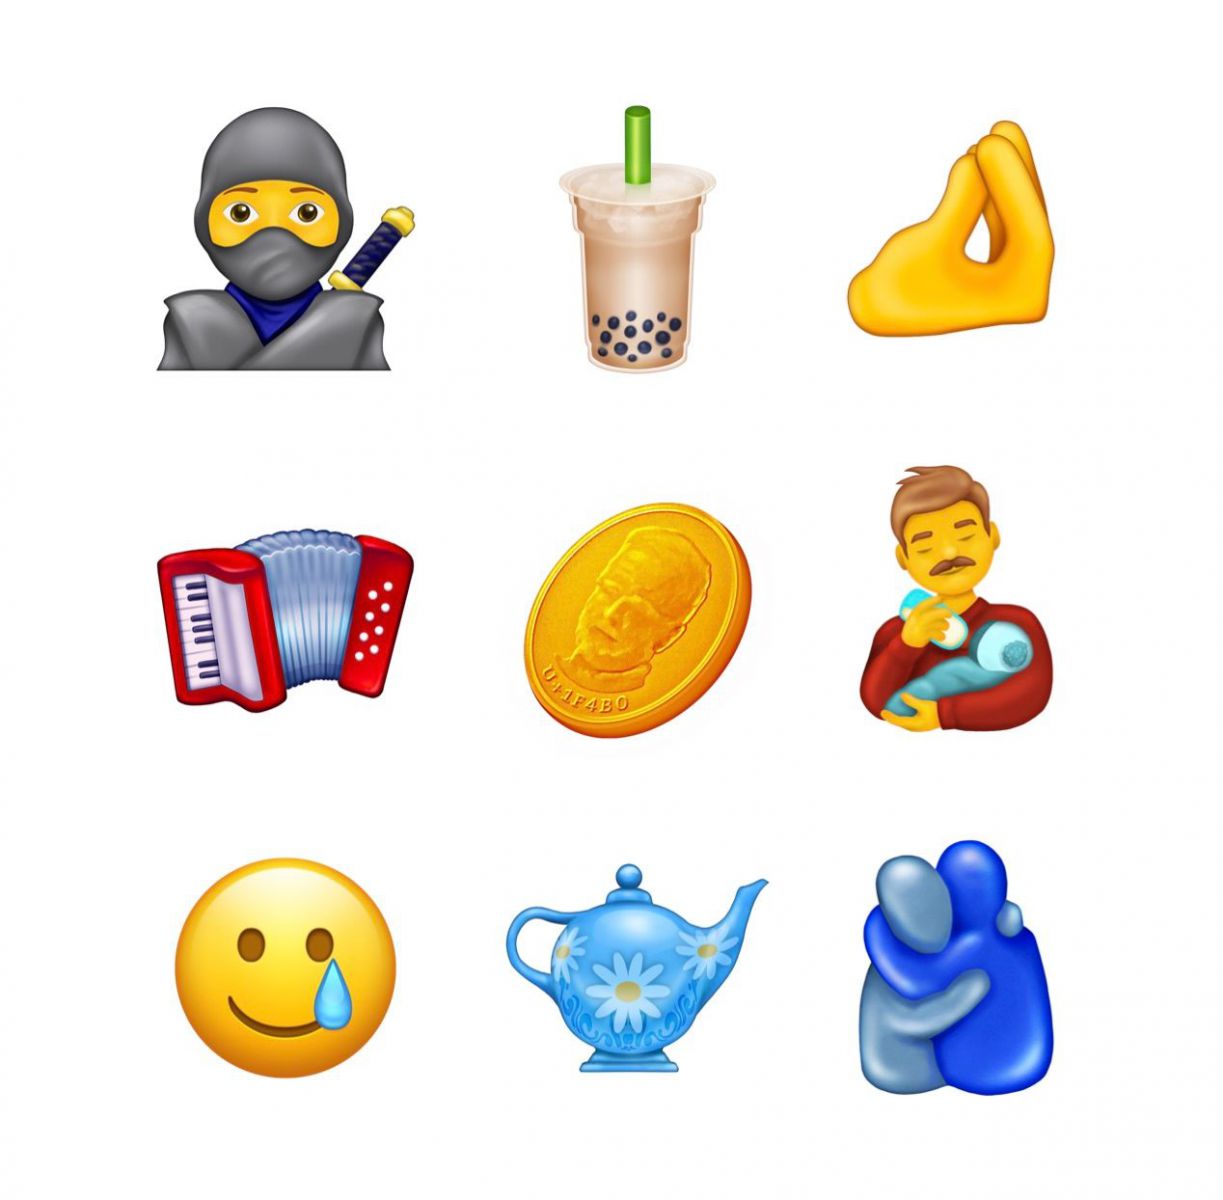 Gân 200 emoji sẽ được bổ sung vào bộ sưu tập của iOS 14